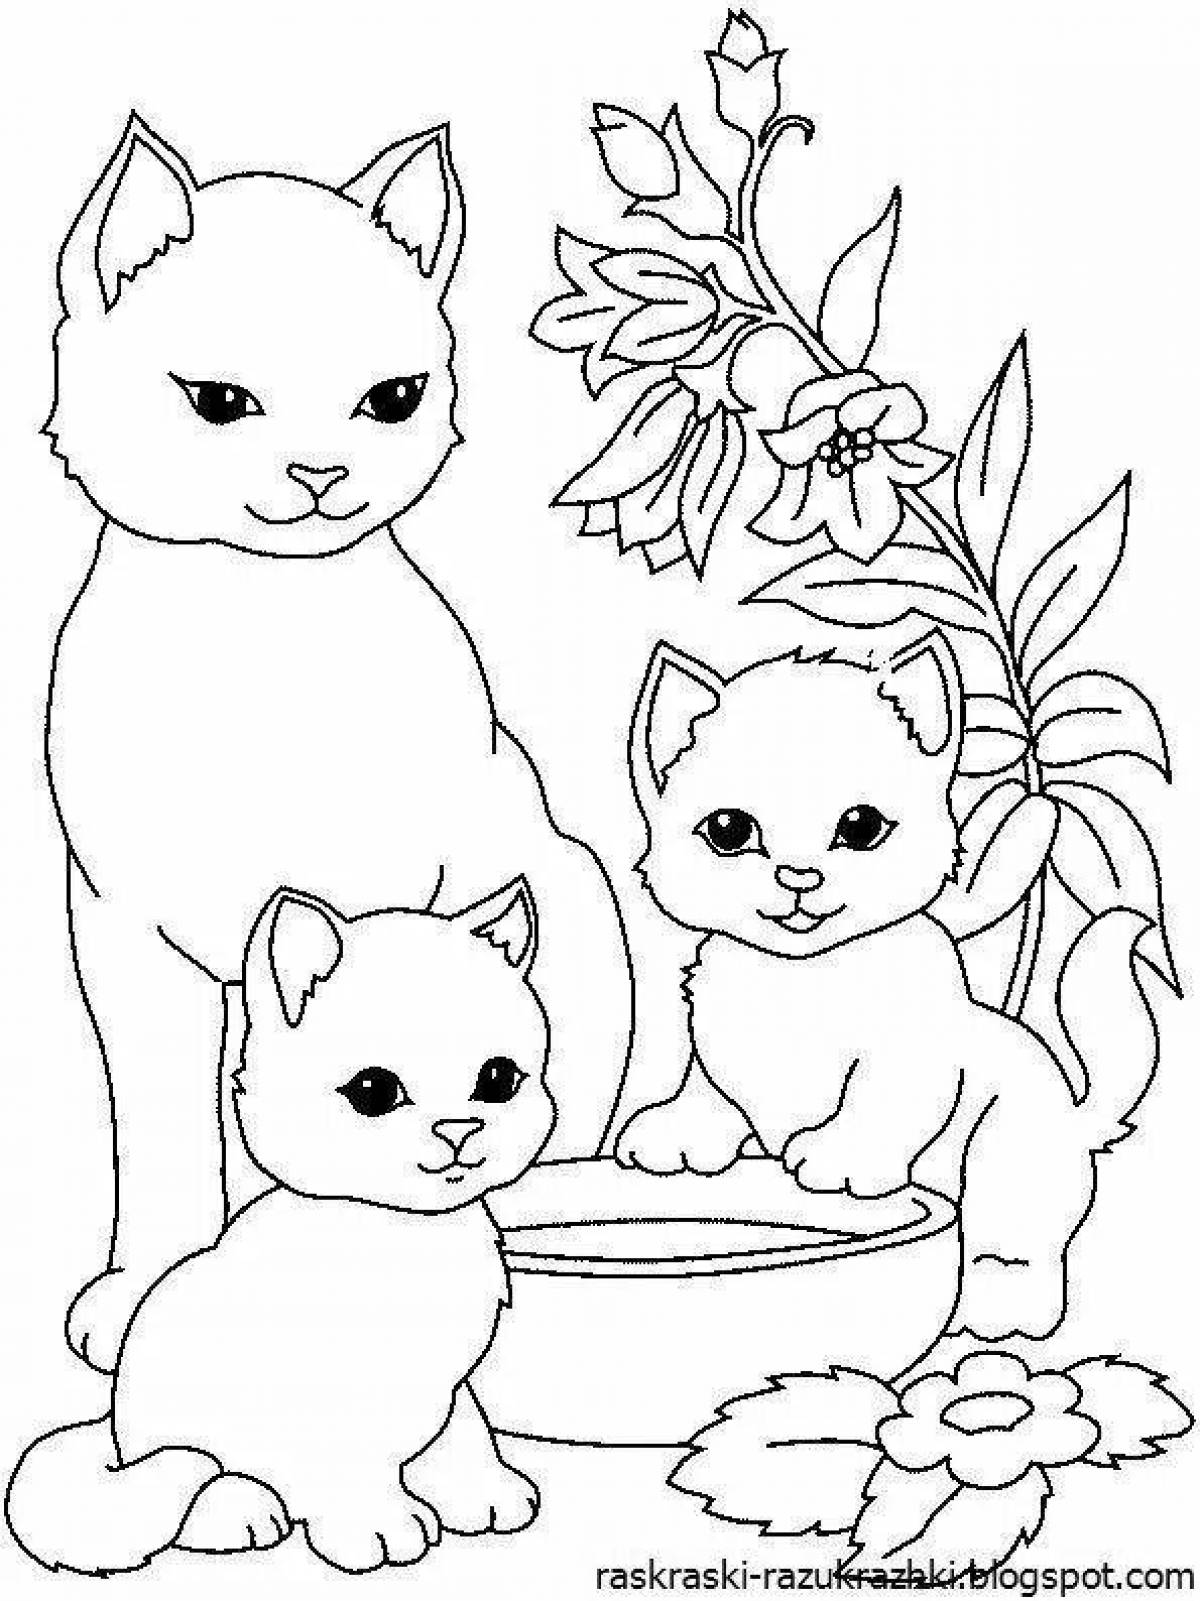 Раскраска кошки для детей 4 5 лет. Котенок. Раскраска. Раскраска. Котики. Раскраска кошечка. Окошко раскраска.